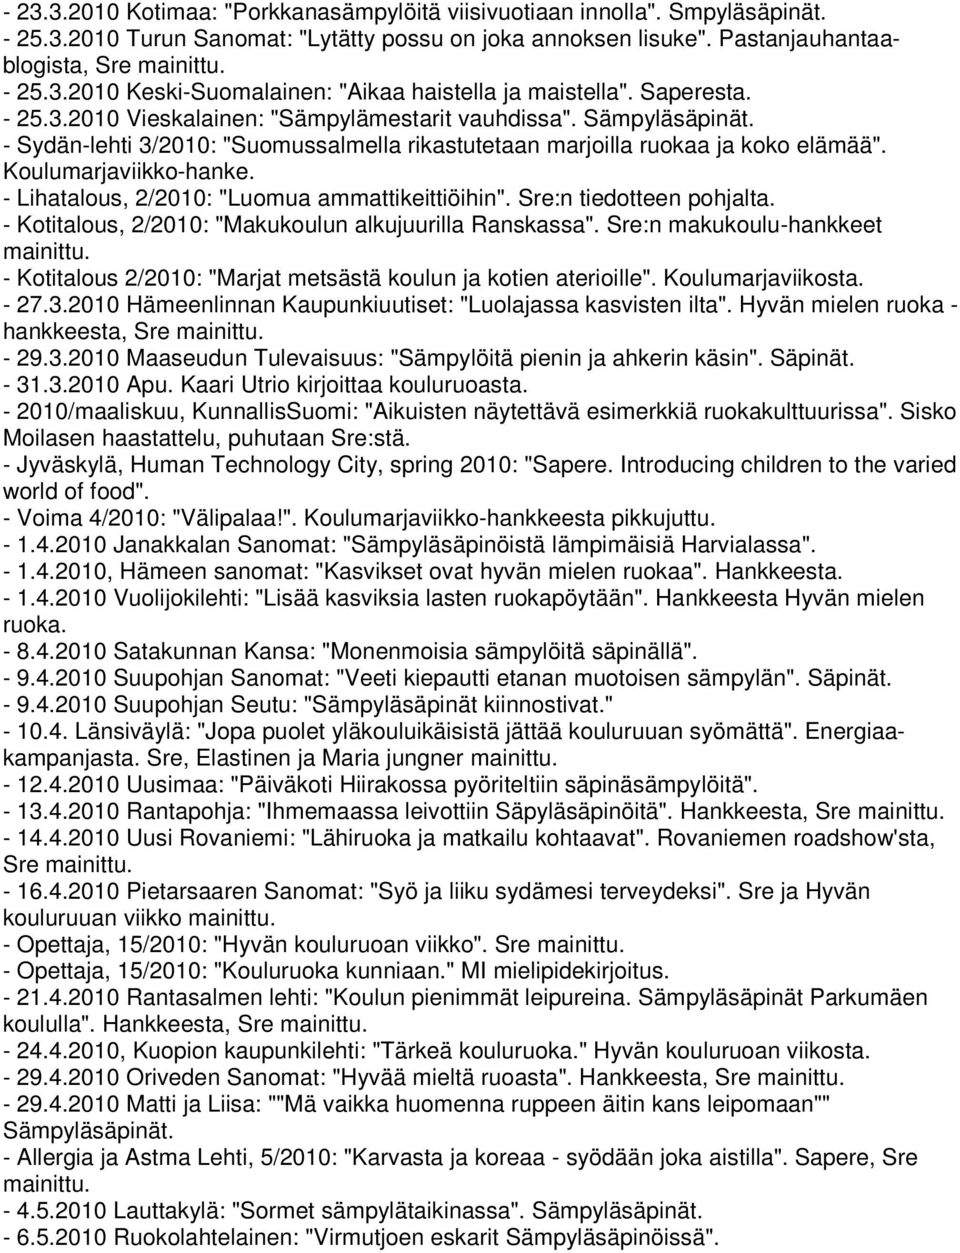 - Lihatalous, 2/2010: "Luomua ammattikeittiöihin". Sre:n tiedotteen pohjalta. - Kotitalous, 2/2010: "Makukoulun alkujuurilla Ranskassa". Sre:n makukoulu-hankkeet mainittu.